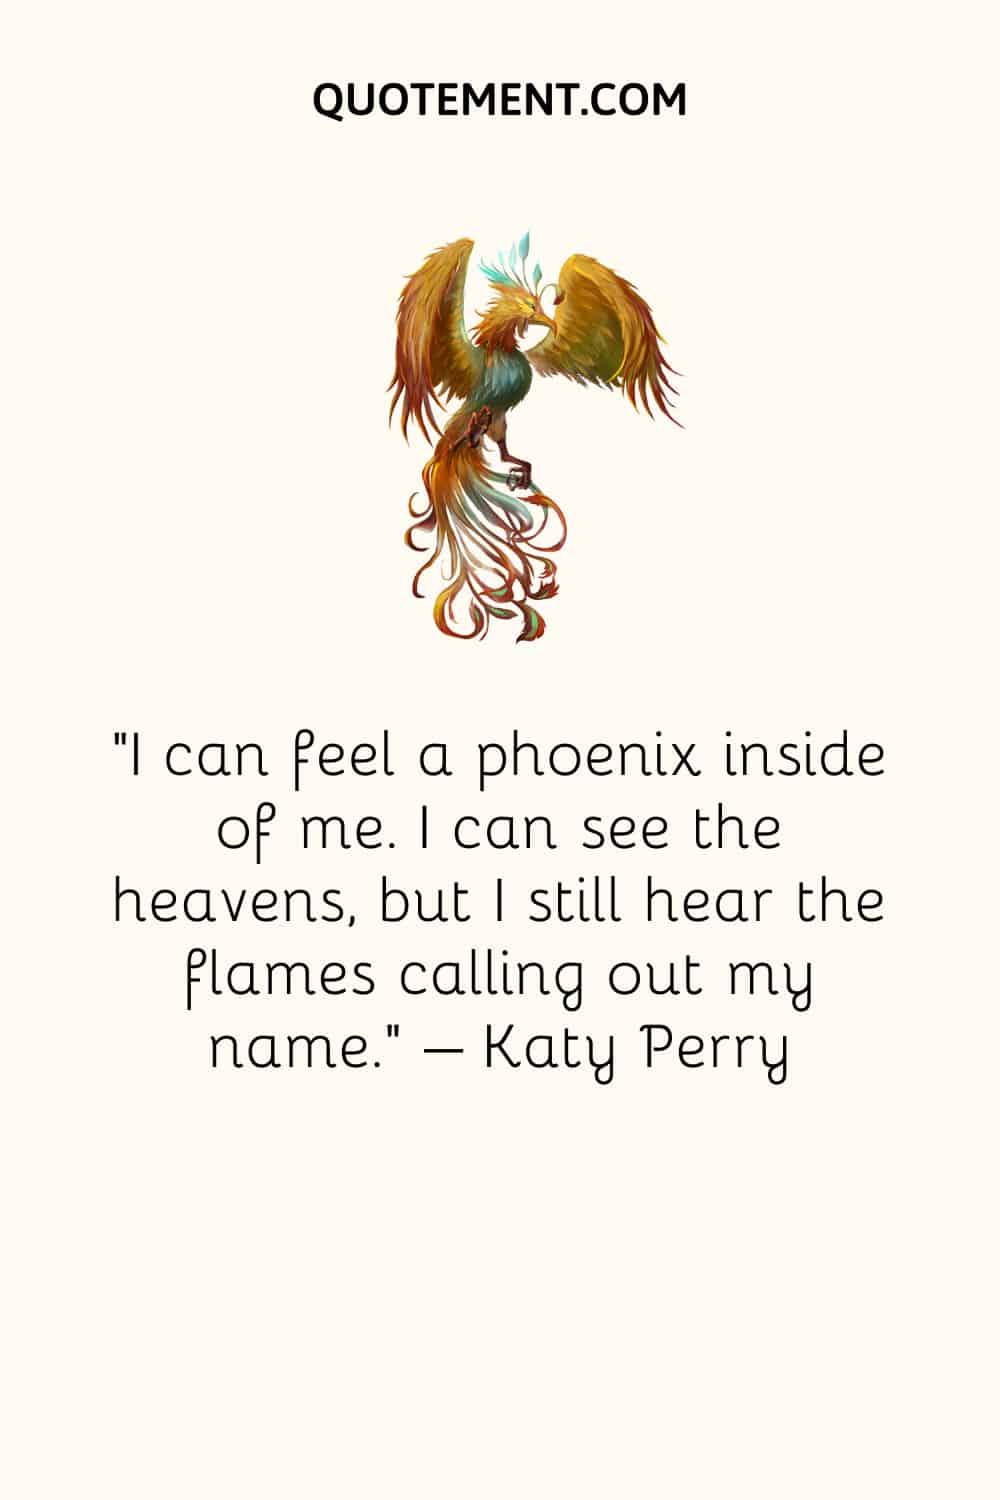 I can feel a phoenix inside of me